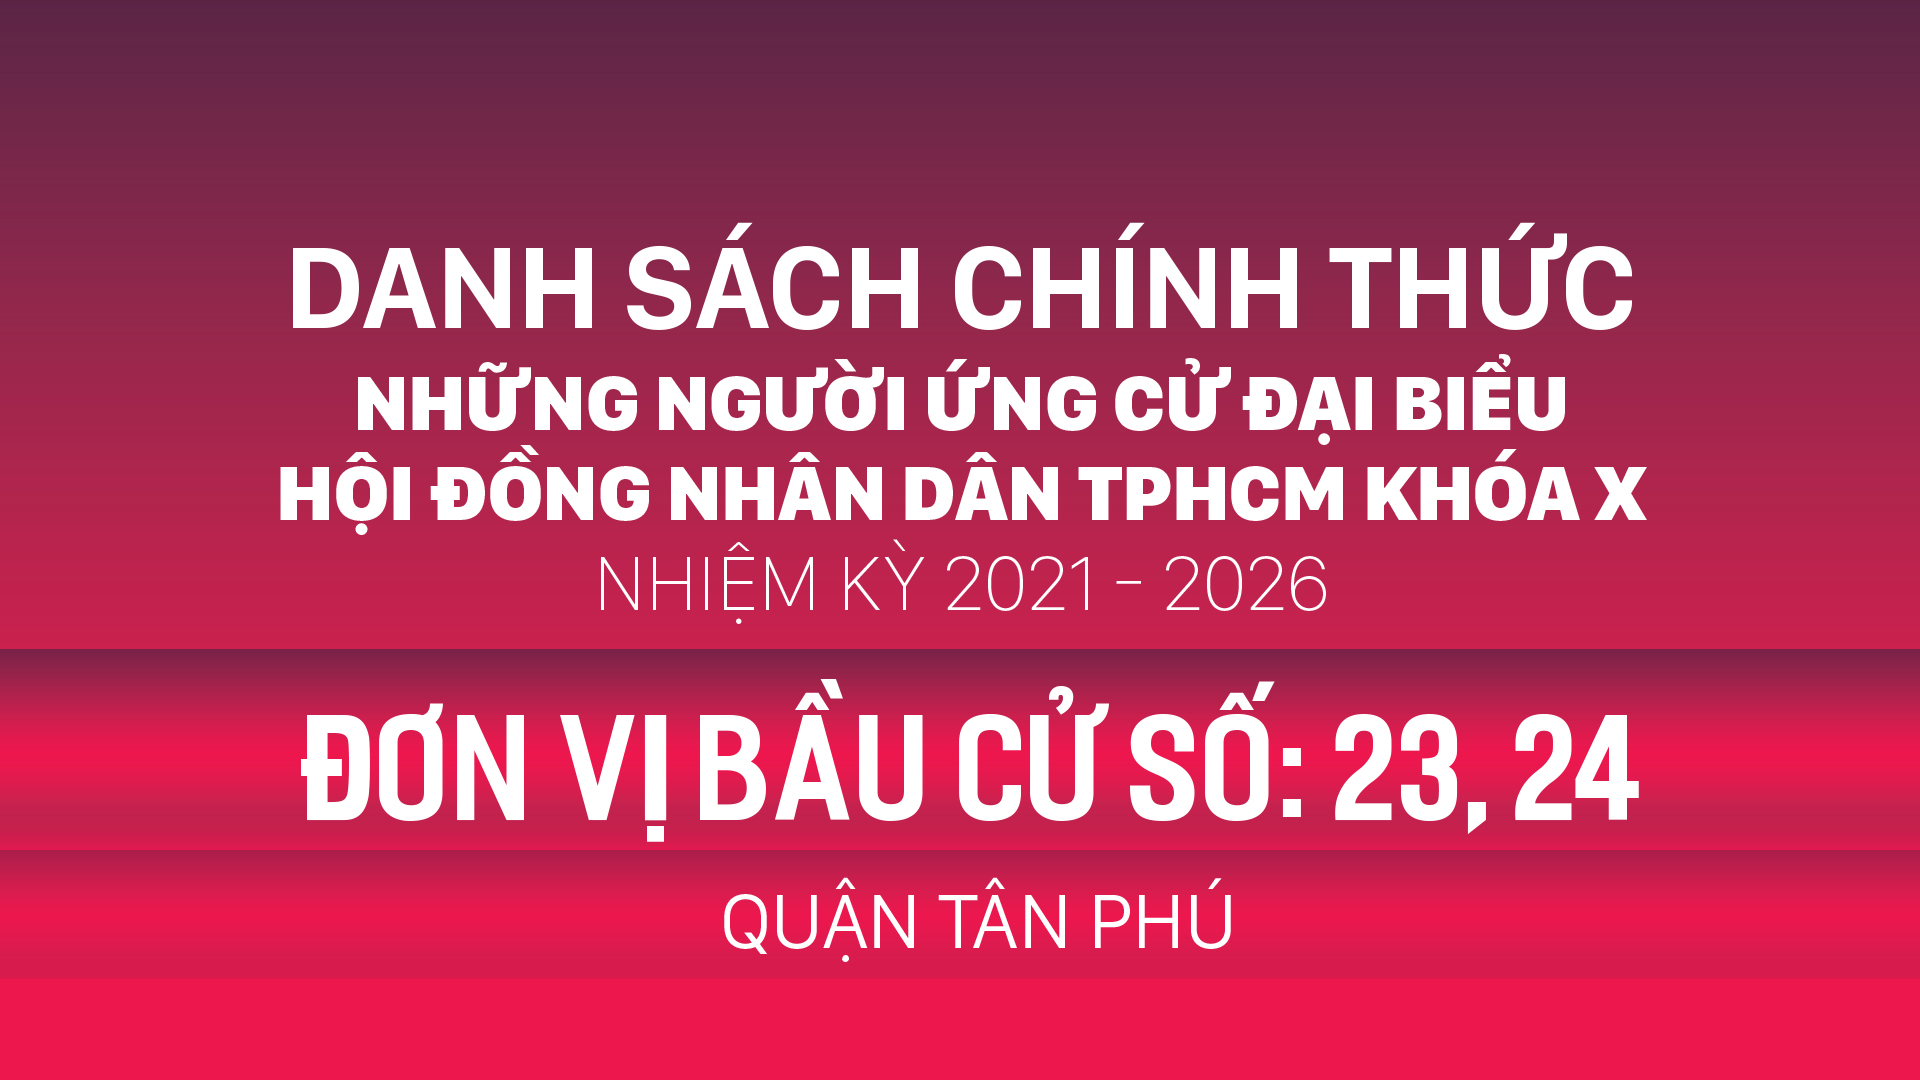 Đơn vị bầu cử số: 23, 24 (quận Tân Phú)